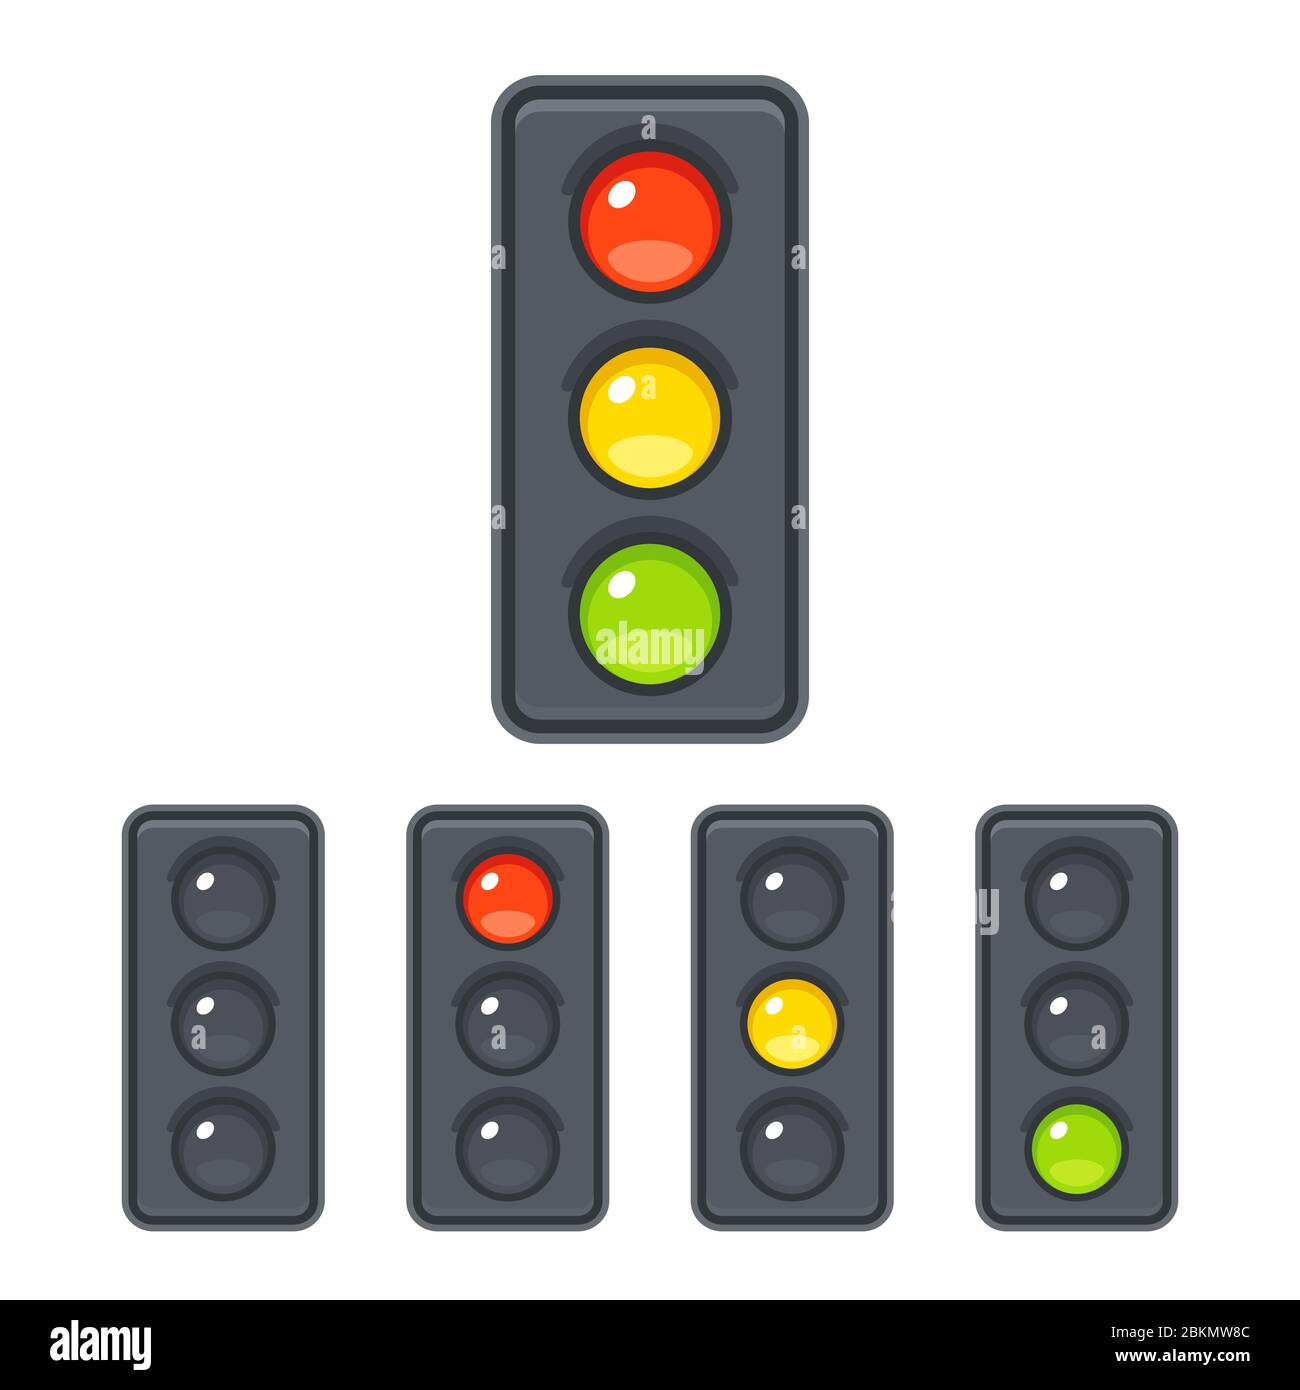 El icono de semáforo se ha establecido con luces rojas, amarillas y verdes. Ilustración de imágenes prediseñadas vectoriales en un estilo de dibujos animados sencillo. Ilustración del Vector